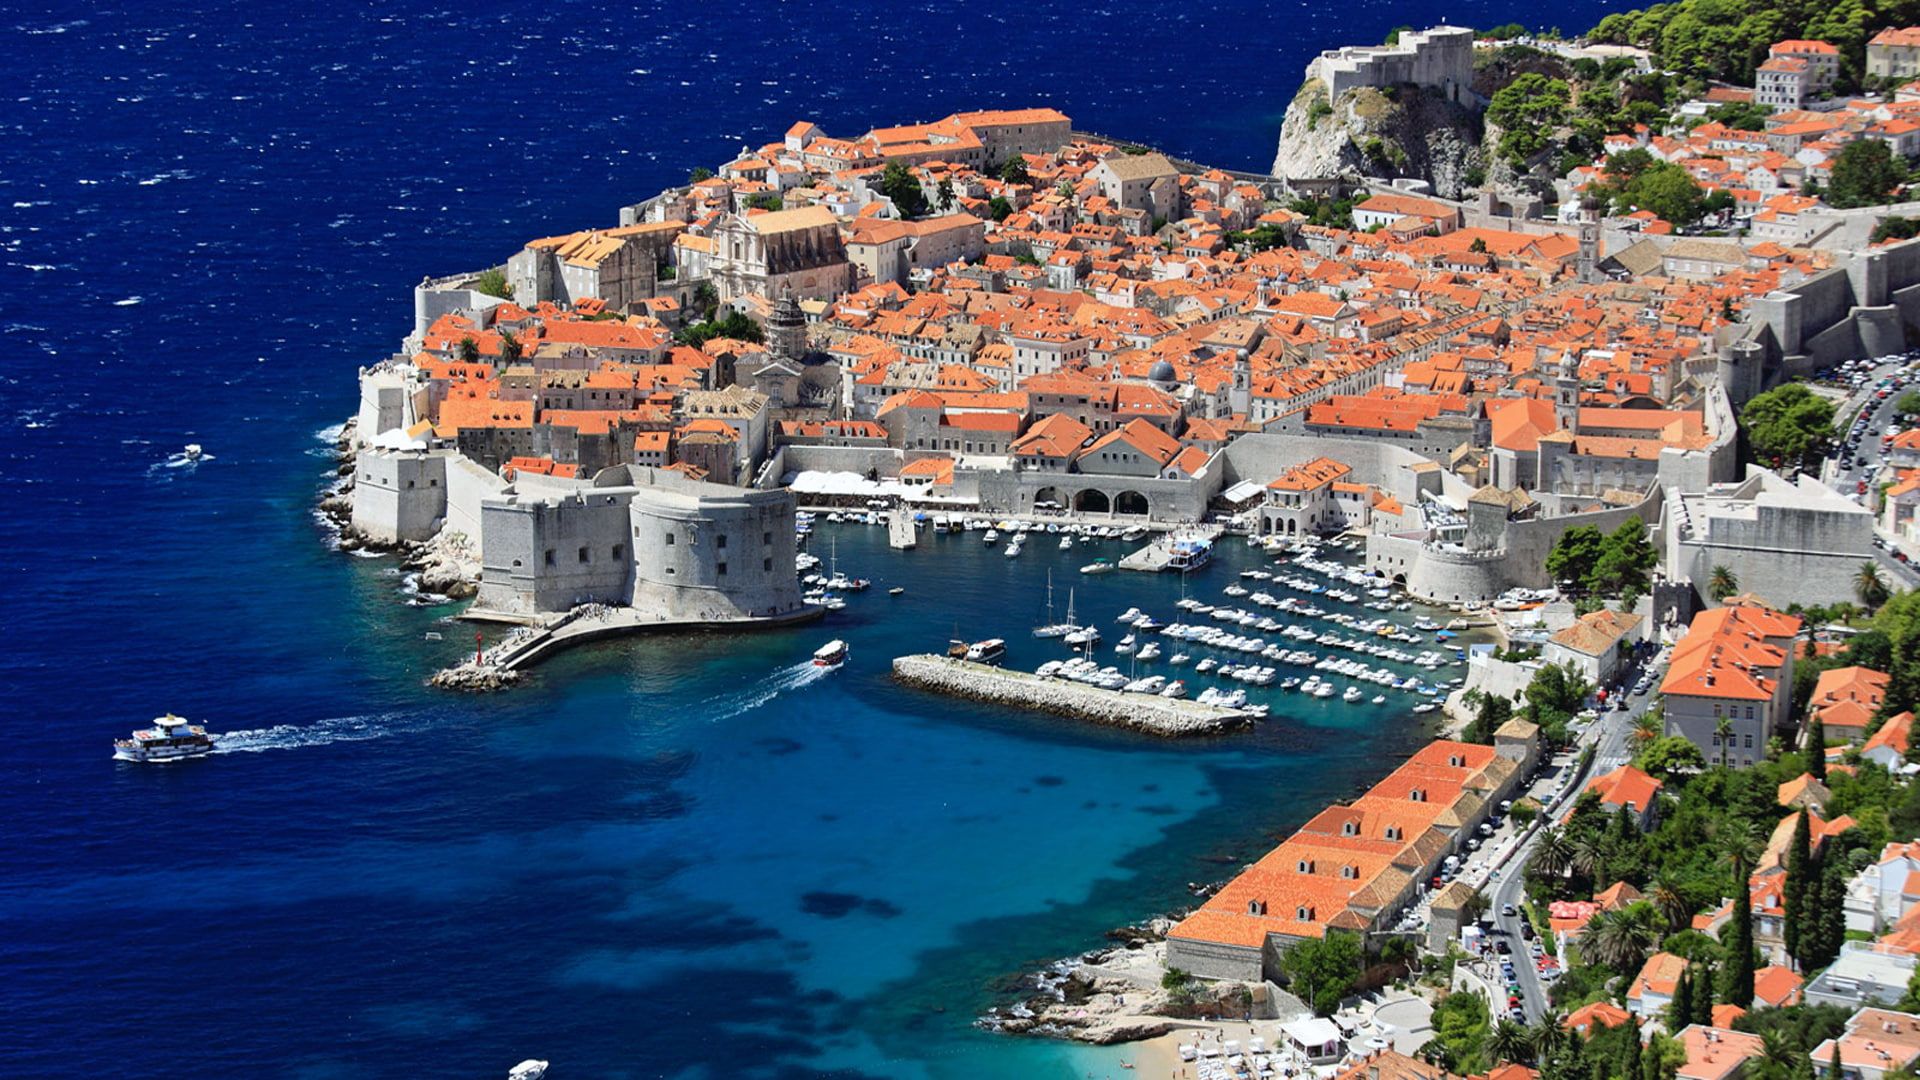 Summer Destinations Dubrovnik, A Medieval City Croatia Wallpaper HD For Desktop Full Screen 1080p P #wallpaper #hdw. Dubrovnik, Croatia beach, Croatia travel